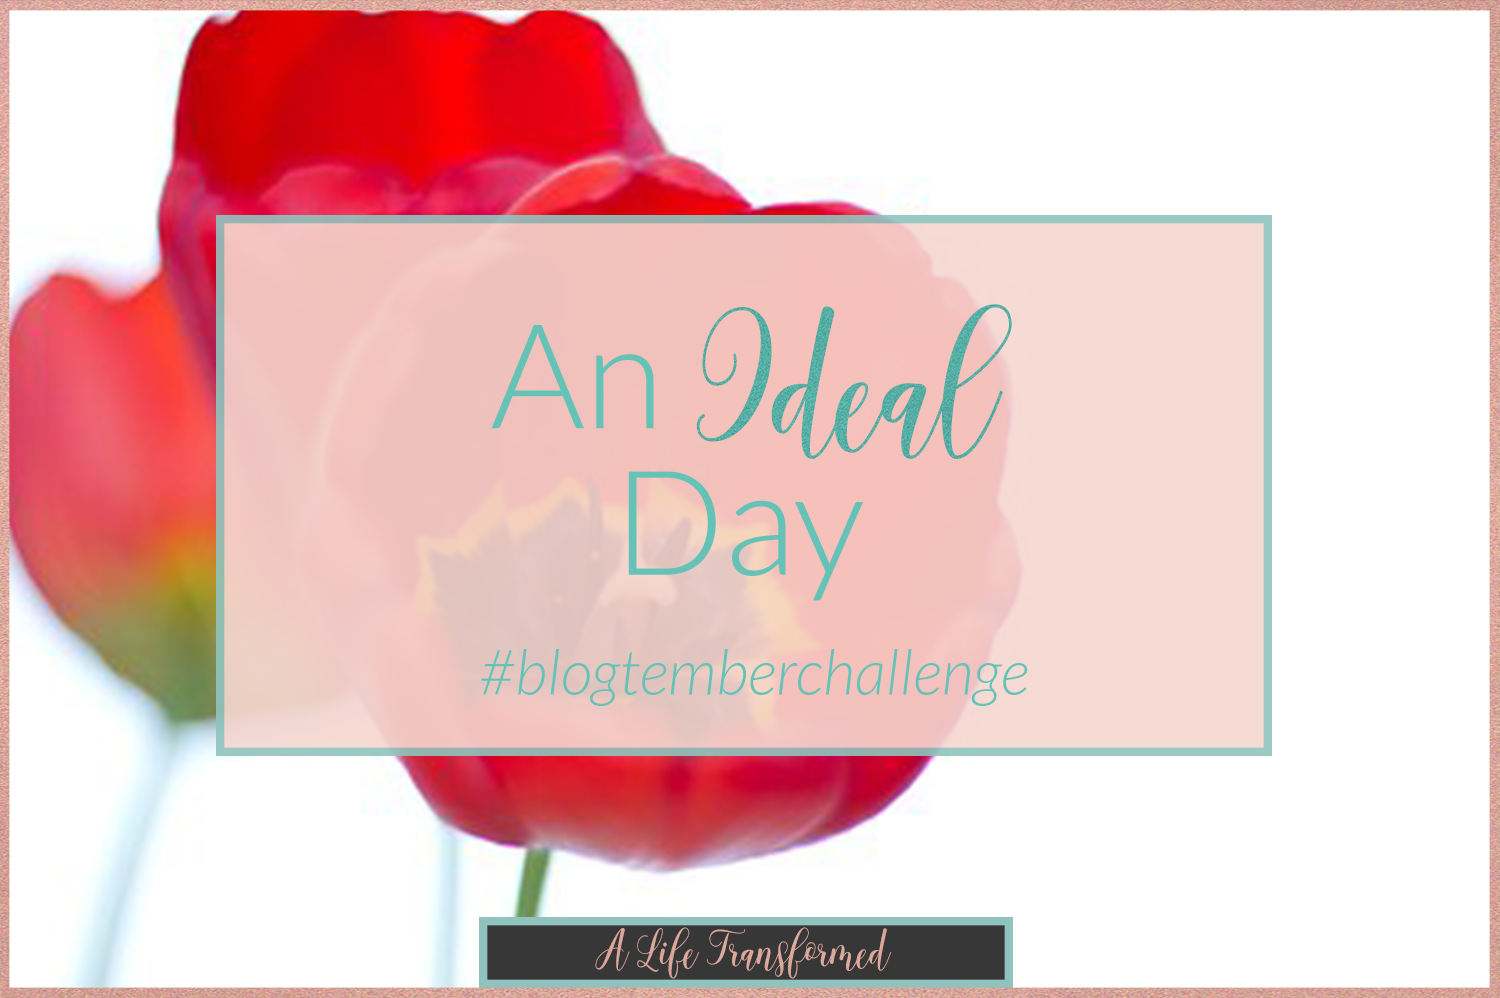 An-Ideal-Day-blogtemberchallenge